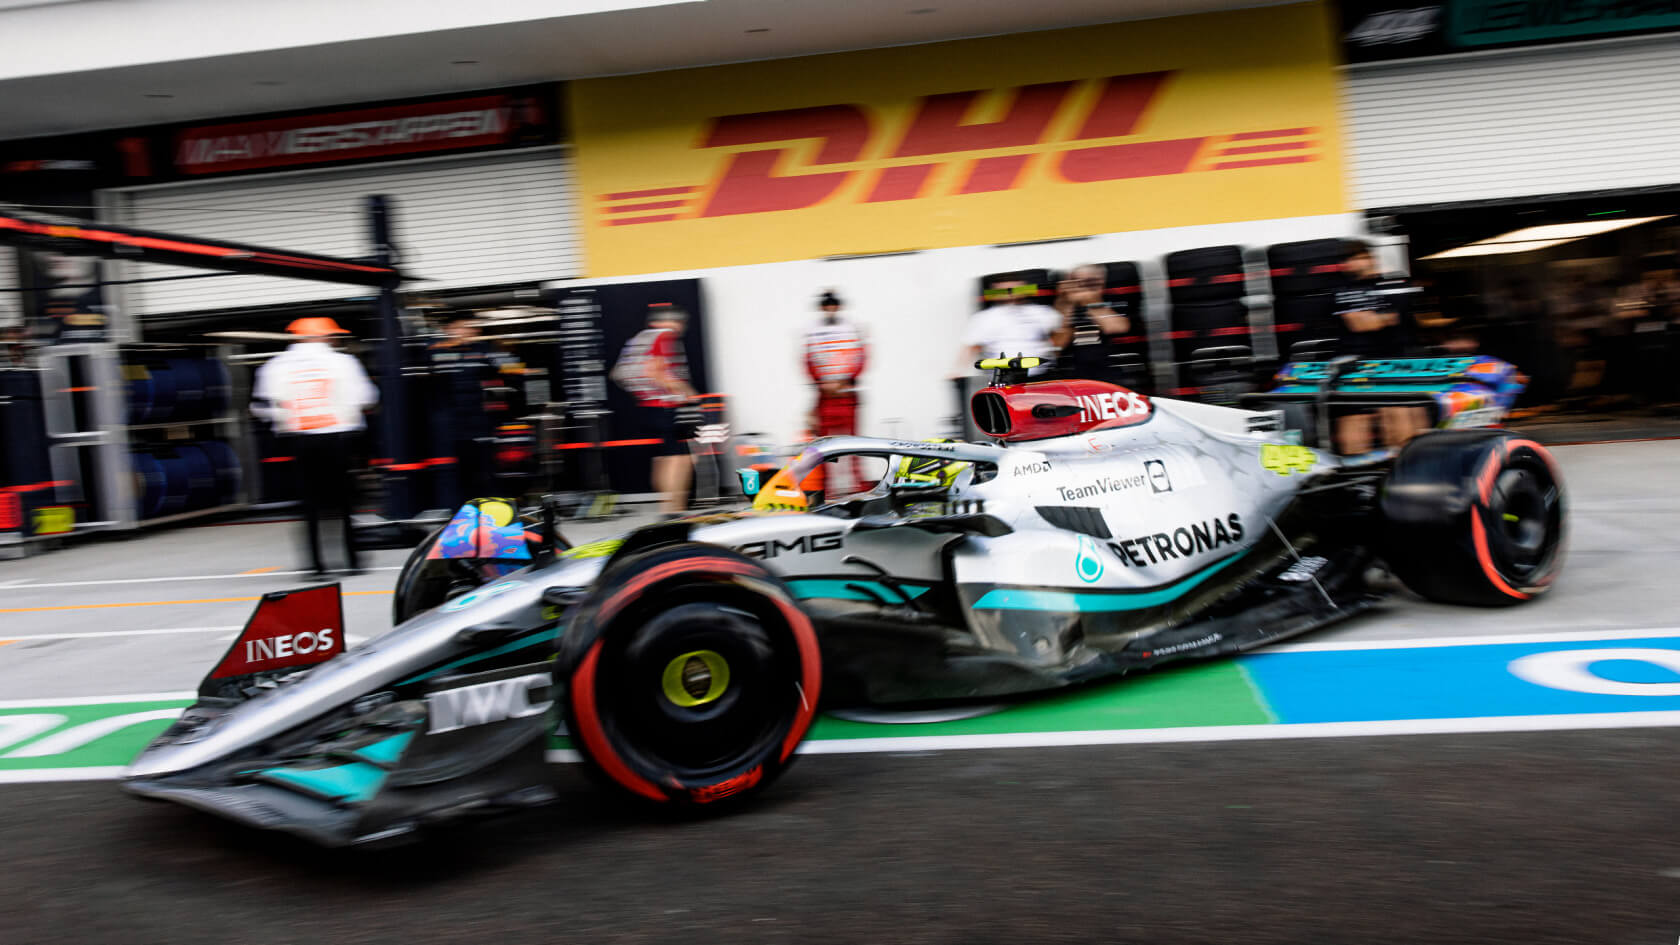 Mercedes-AMG Formula 1 a sair das boxes